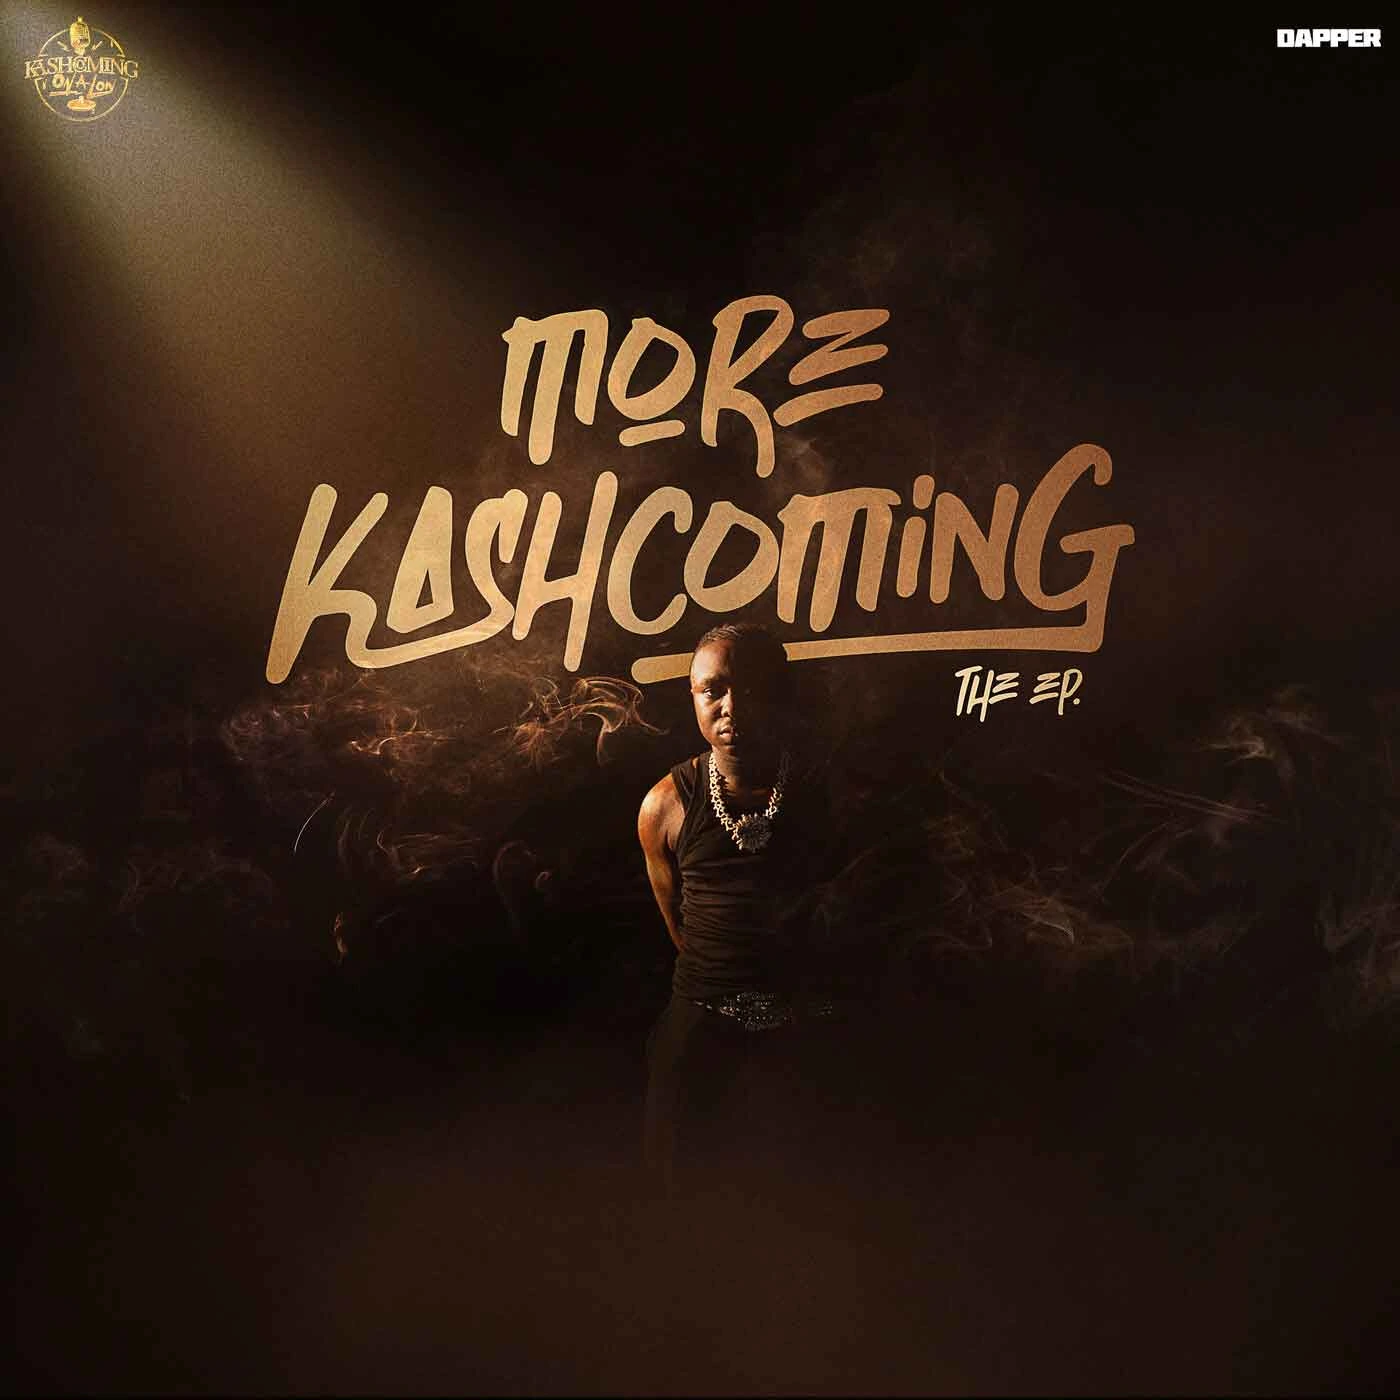 Kashcoming ft. Zerrydl – Casa